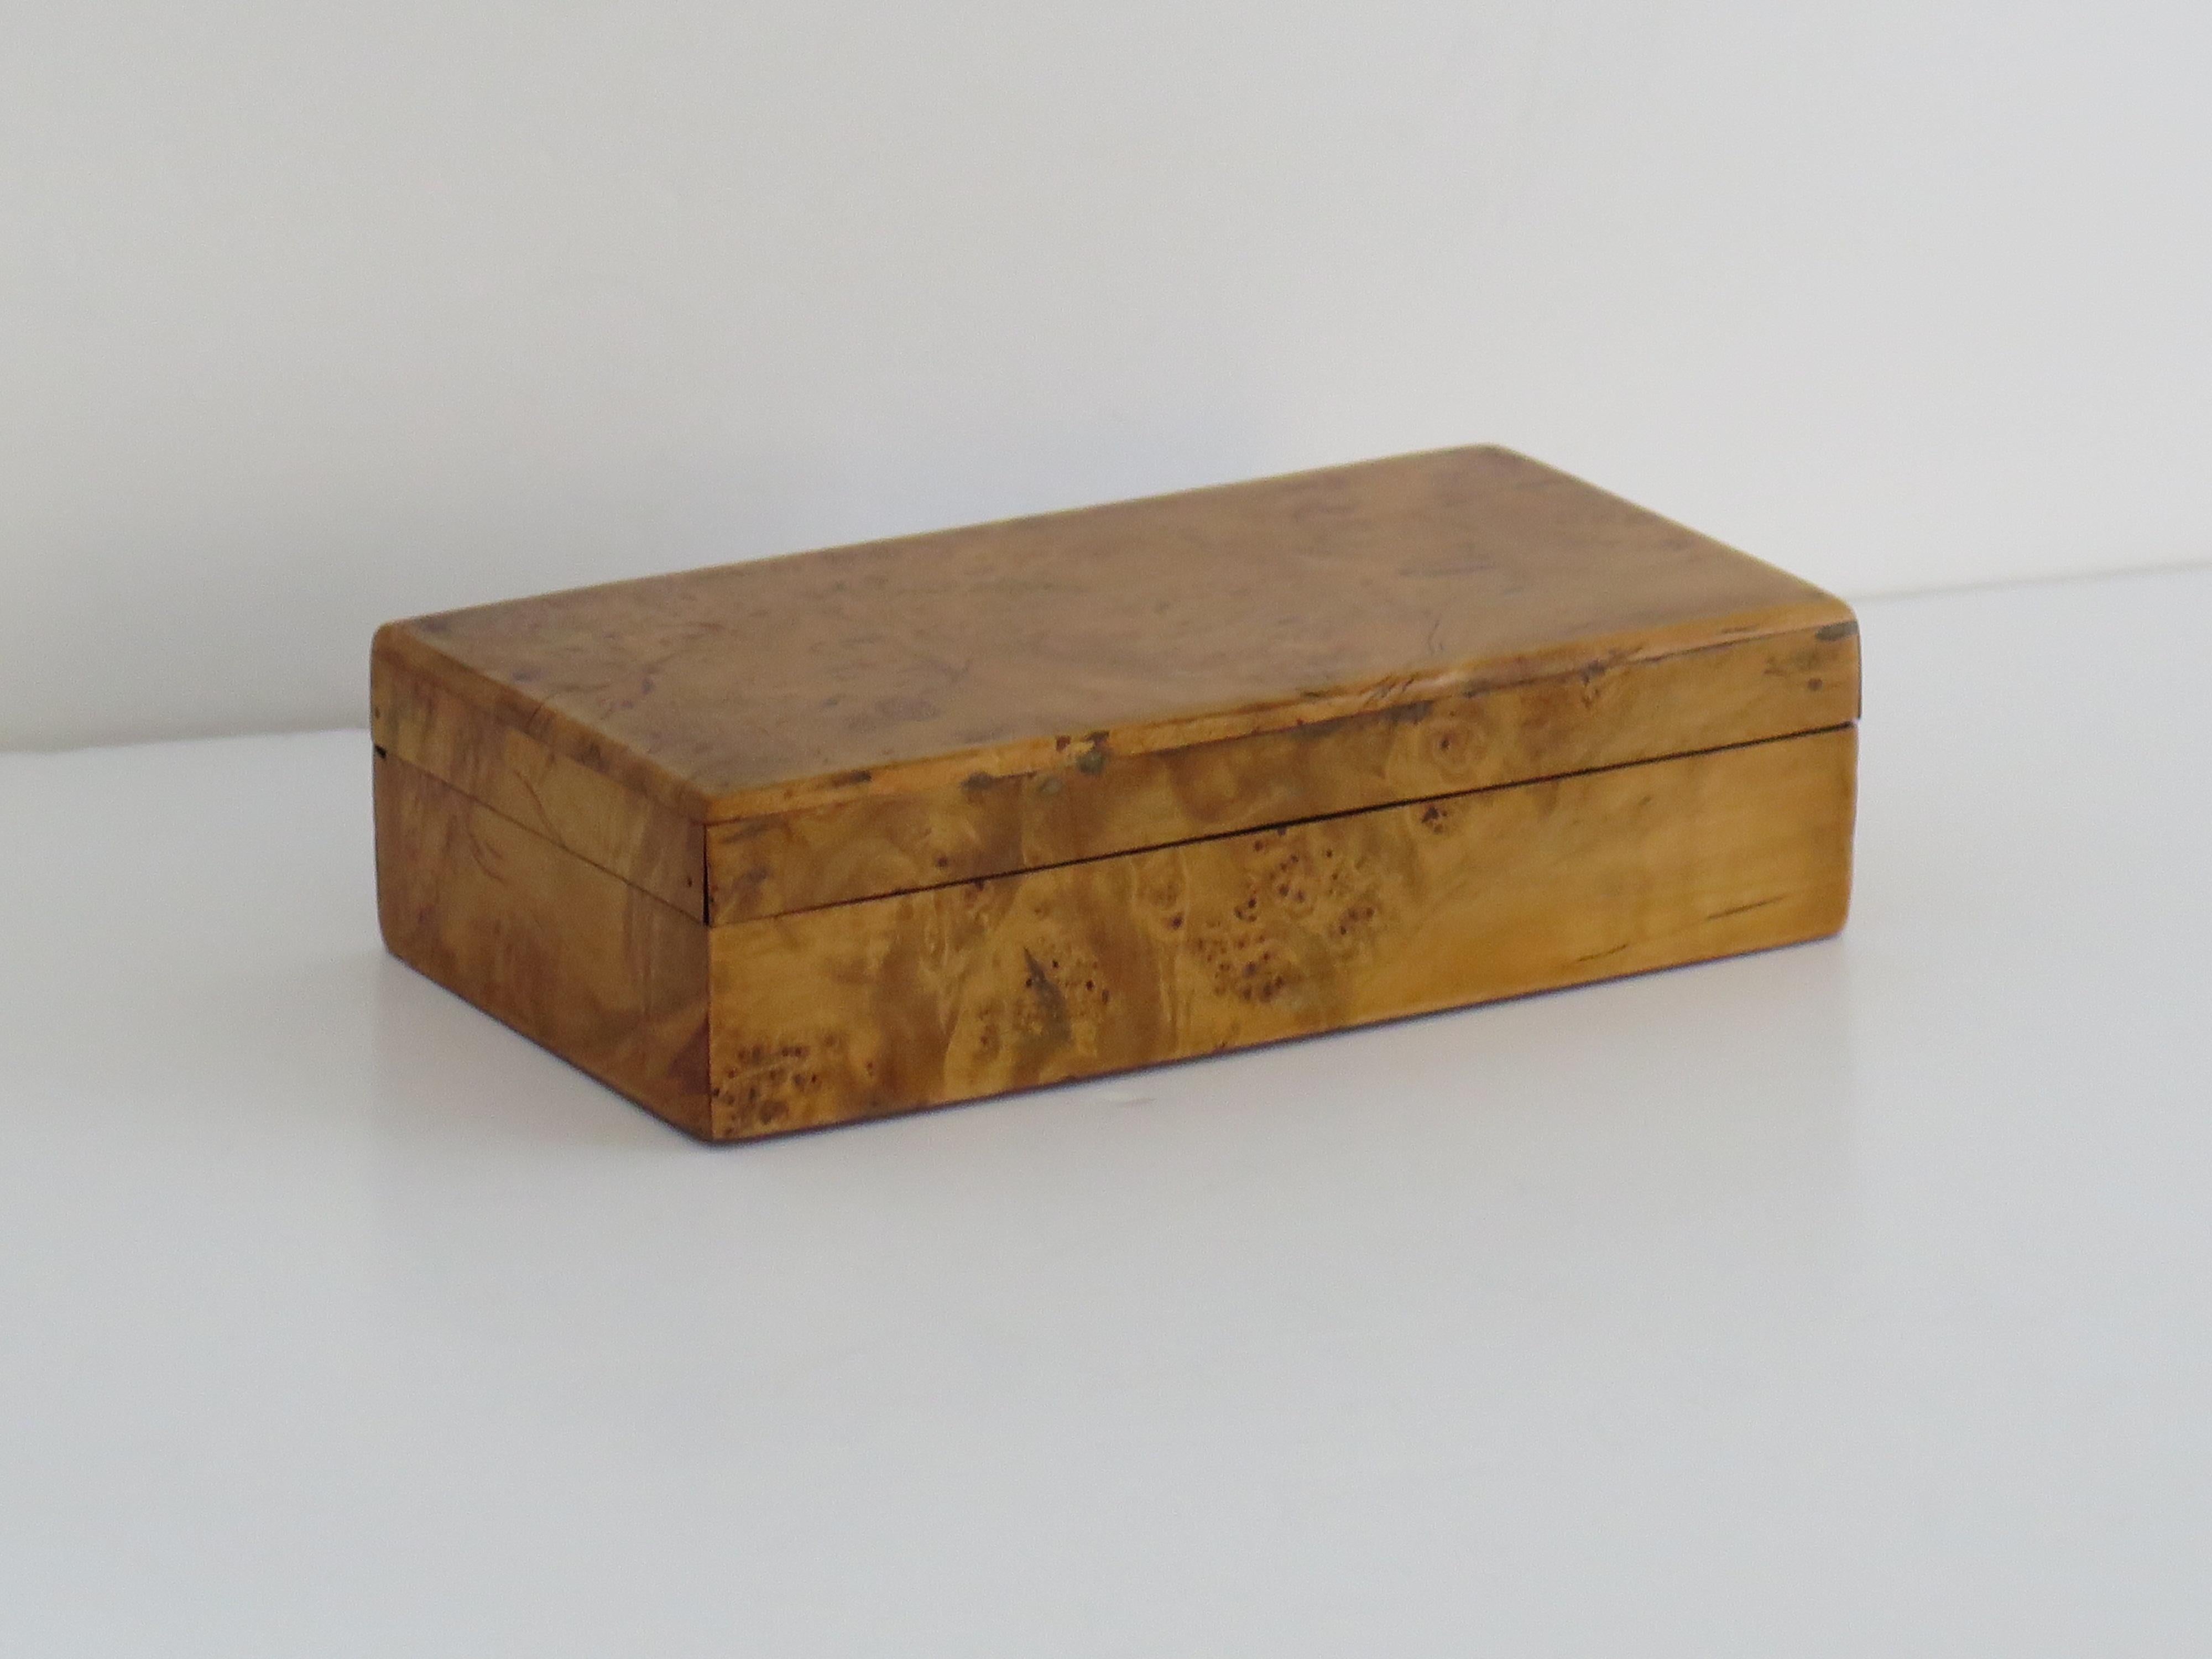 Il s'agit d'une boîte à couvercle de bonne qualité, d'époque Art Déco, en placage d'érable piqué, probablement d'origine française et datant d'environ 1925.

La boîte est de forme rectangulaire avec un couvercle à charnière ajusté, le tout en érable